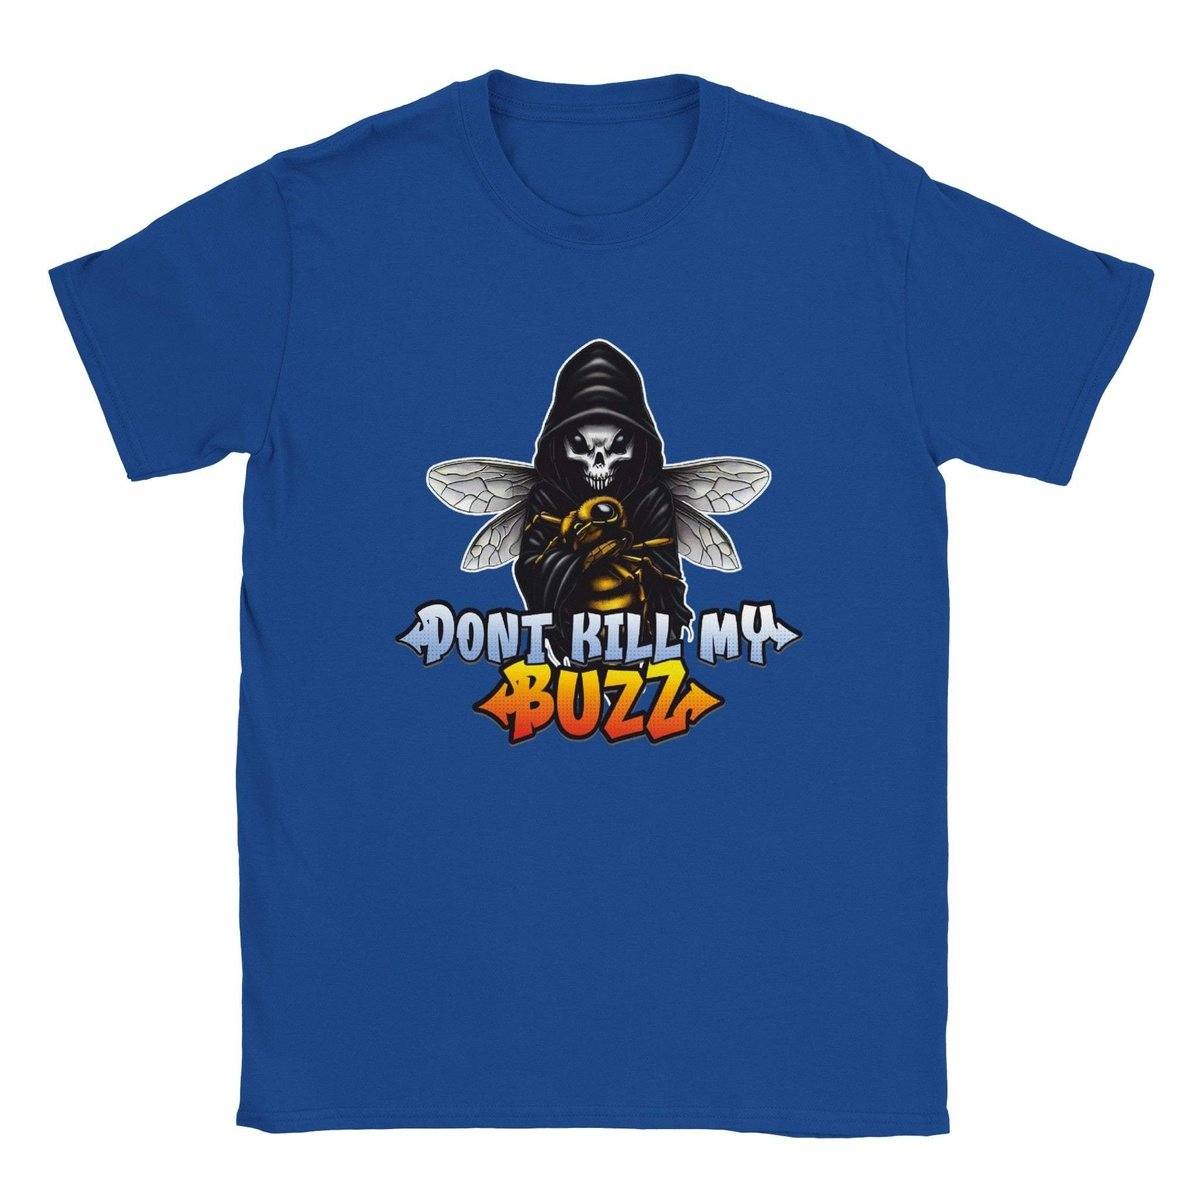 Dont kill my Buzz - Classic Unisex Crewneck T-shirt Australia Online Color Royal / S